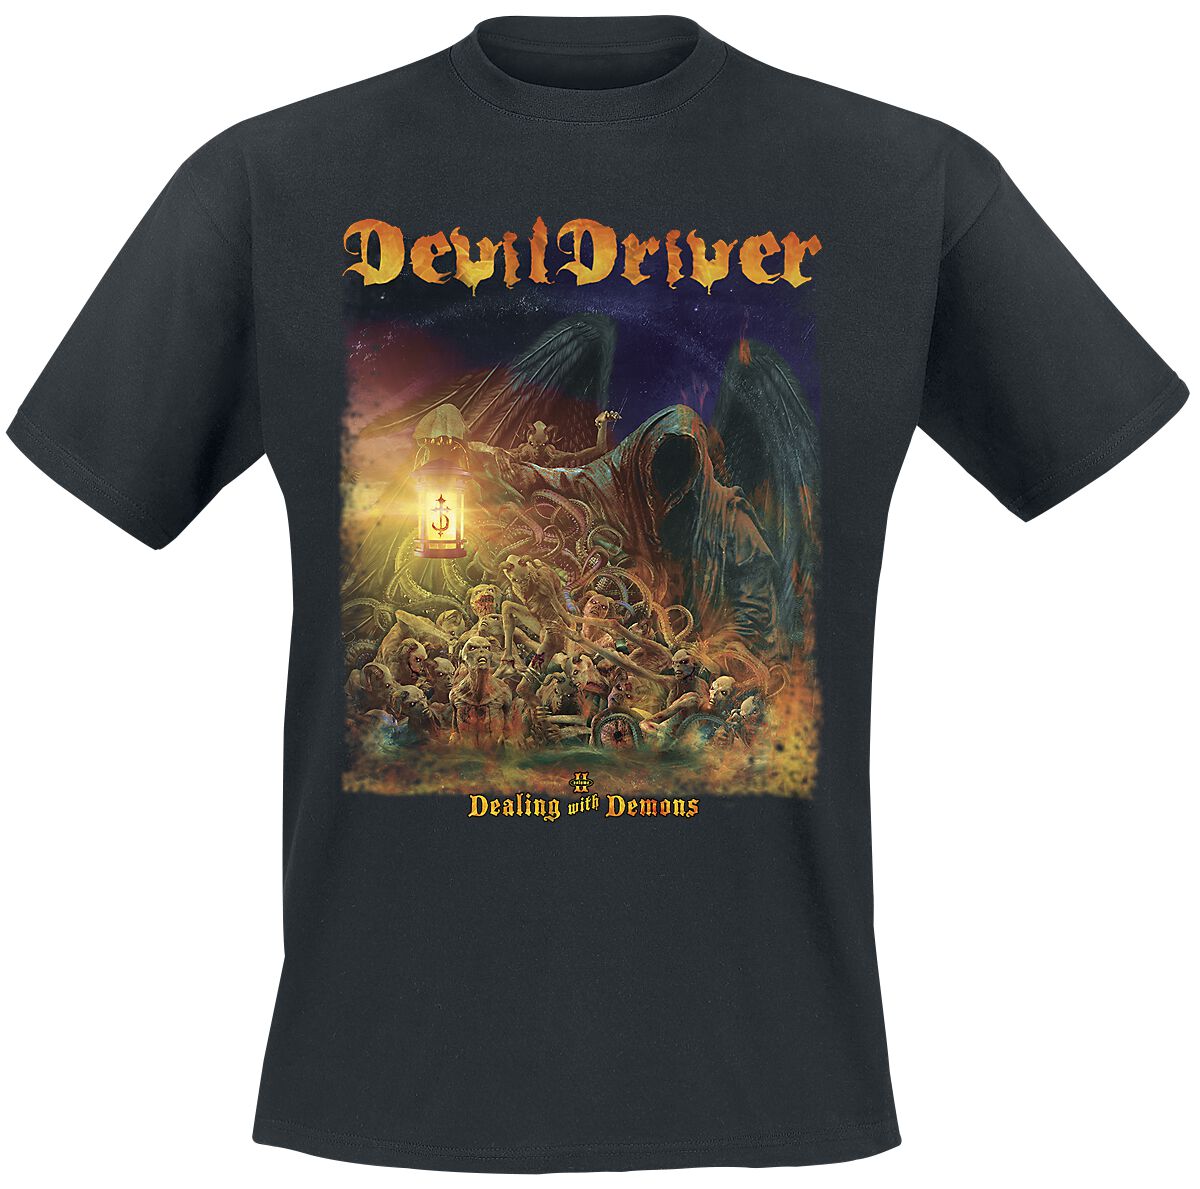 DevilDriver T-Shirt - Dealing With Demons II - S bis L - für Männer - Größe M - schwarz  - Lizenziertes Merchandise!